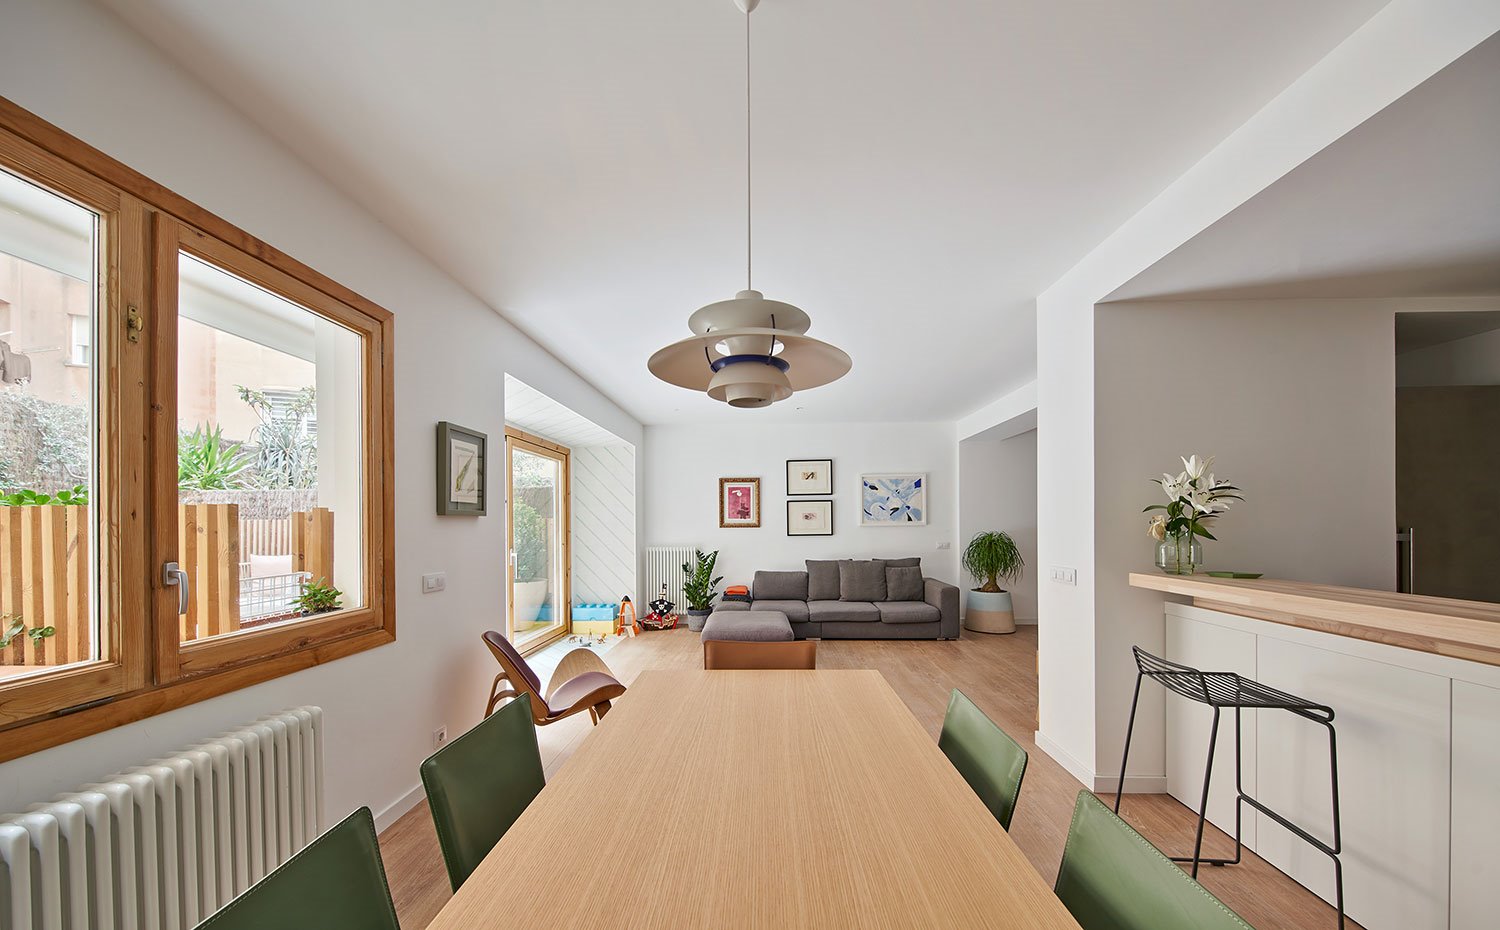 Zona comedor con mesa de madera y sillas en verde, luminaria suspendida vintage, taburete negro junto a zona office de cocina semiabierta